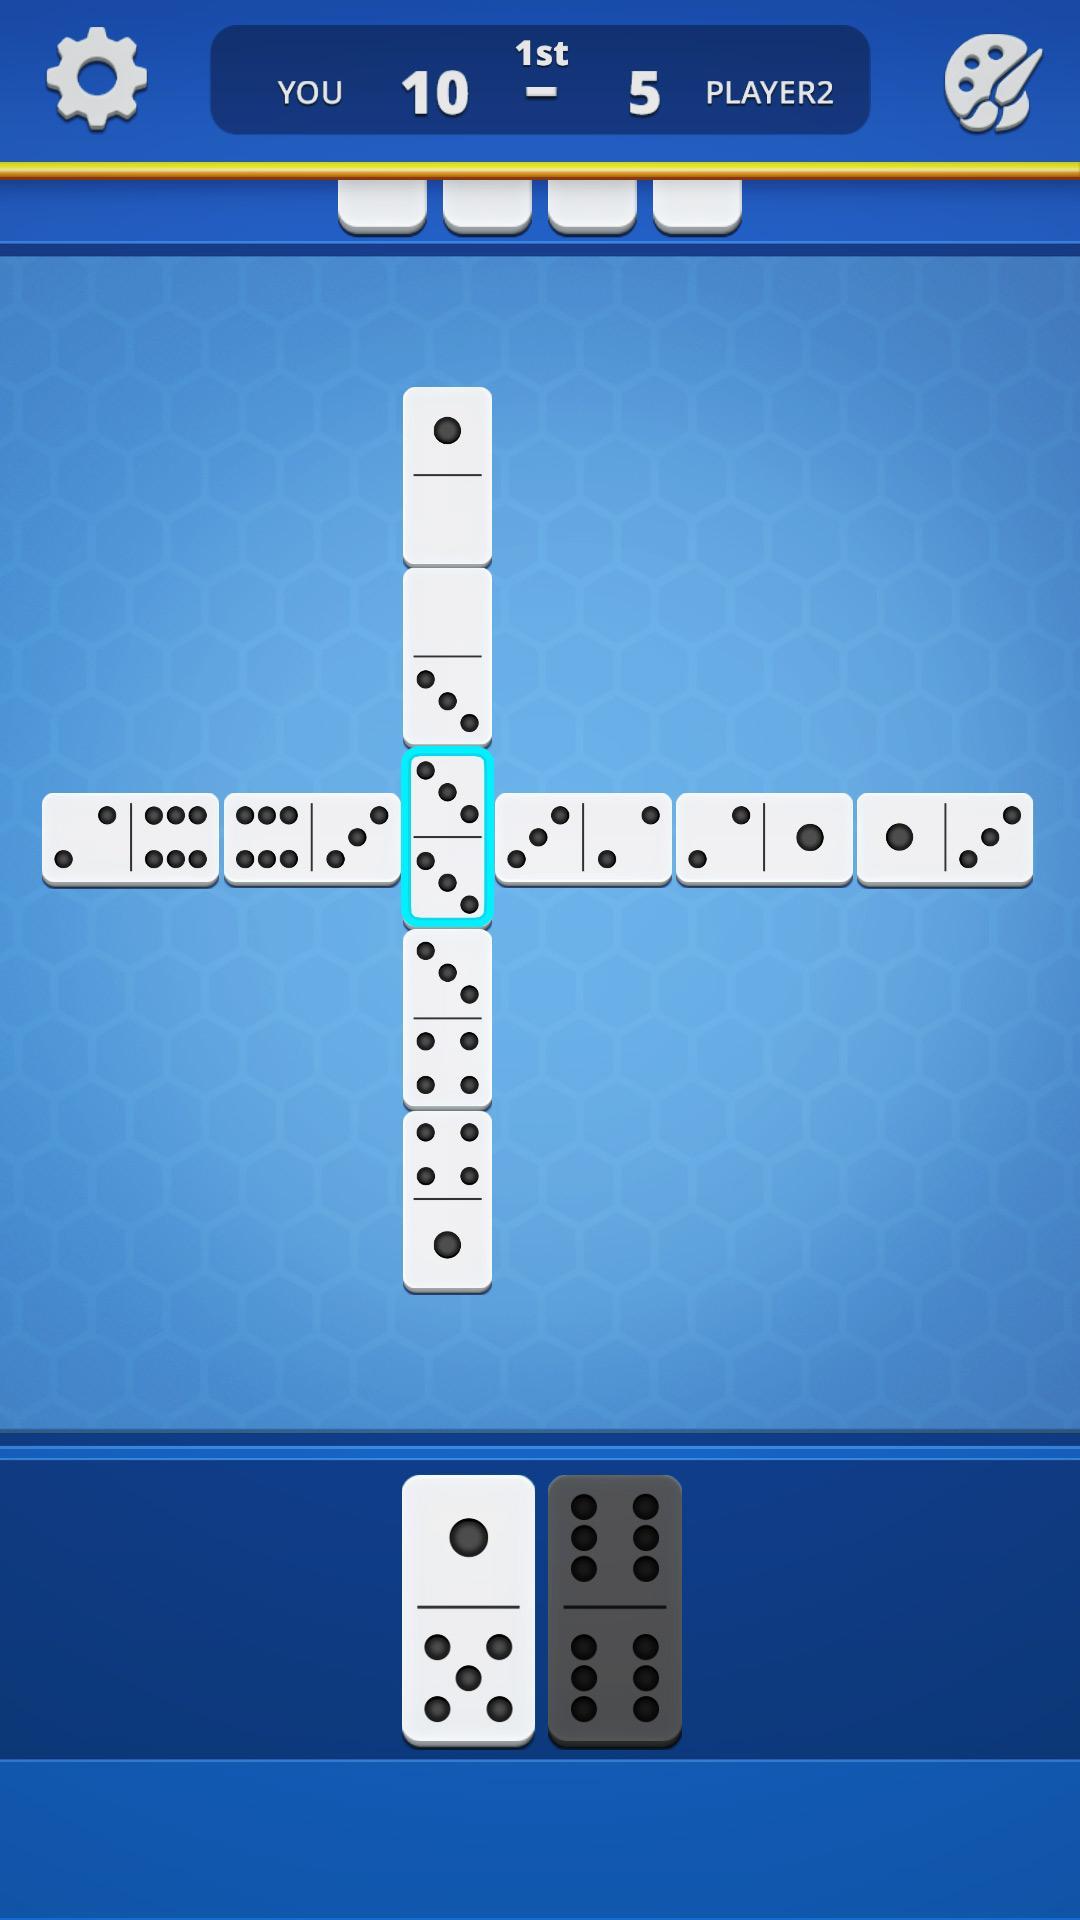 Dominoes Classic Domino Tile Based Game 1.2.5 Screenshot 19